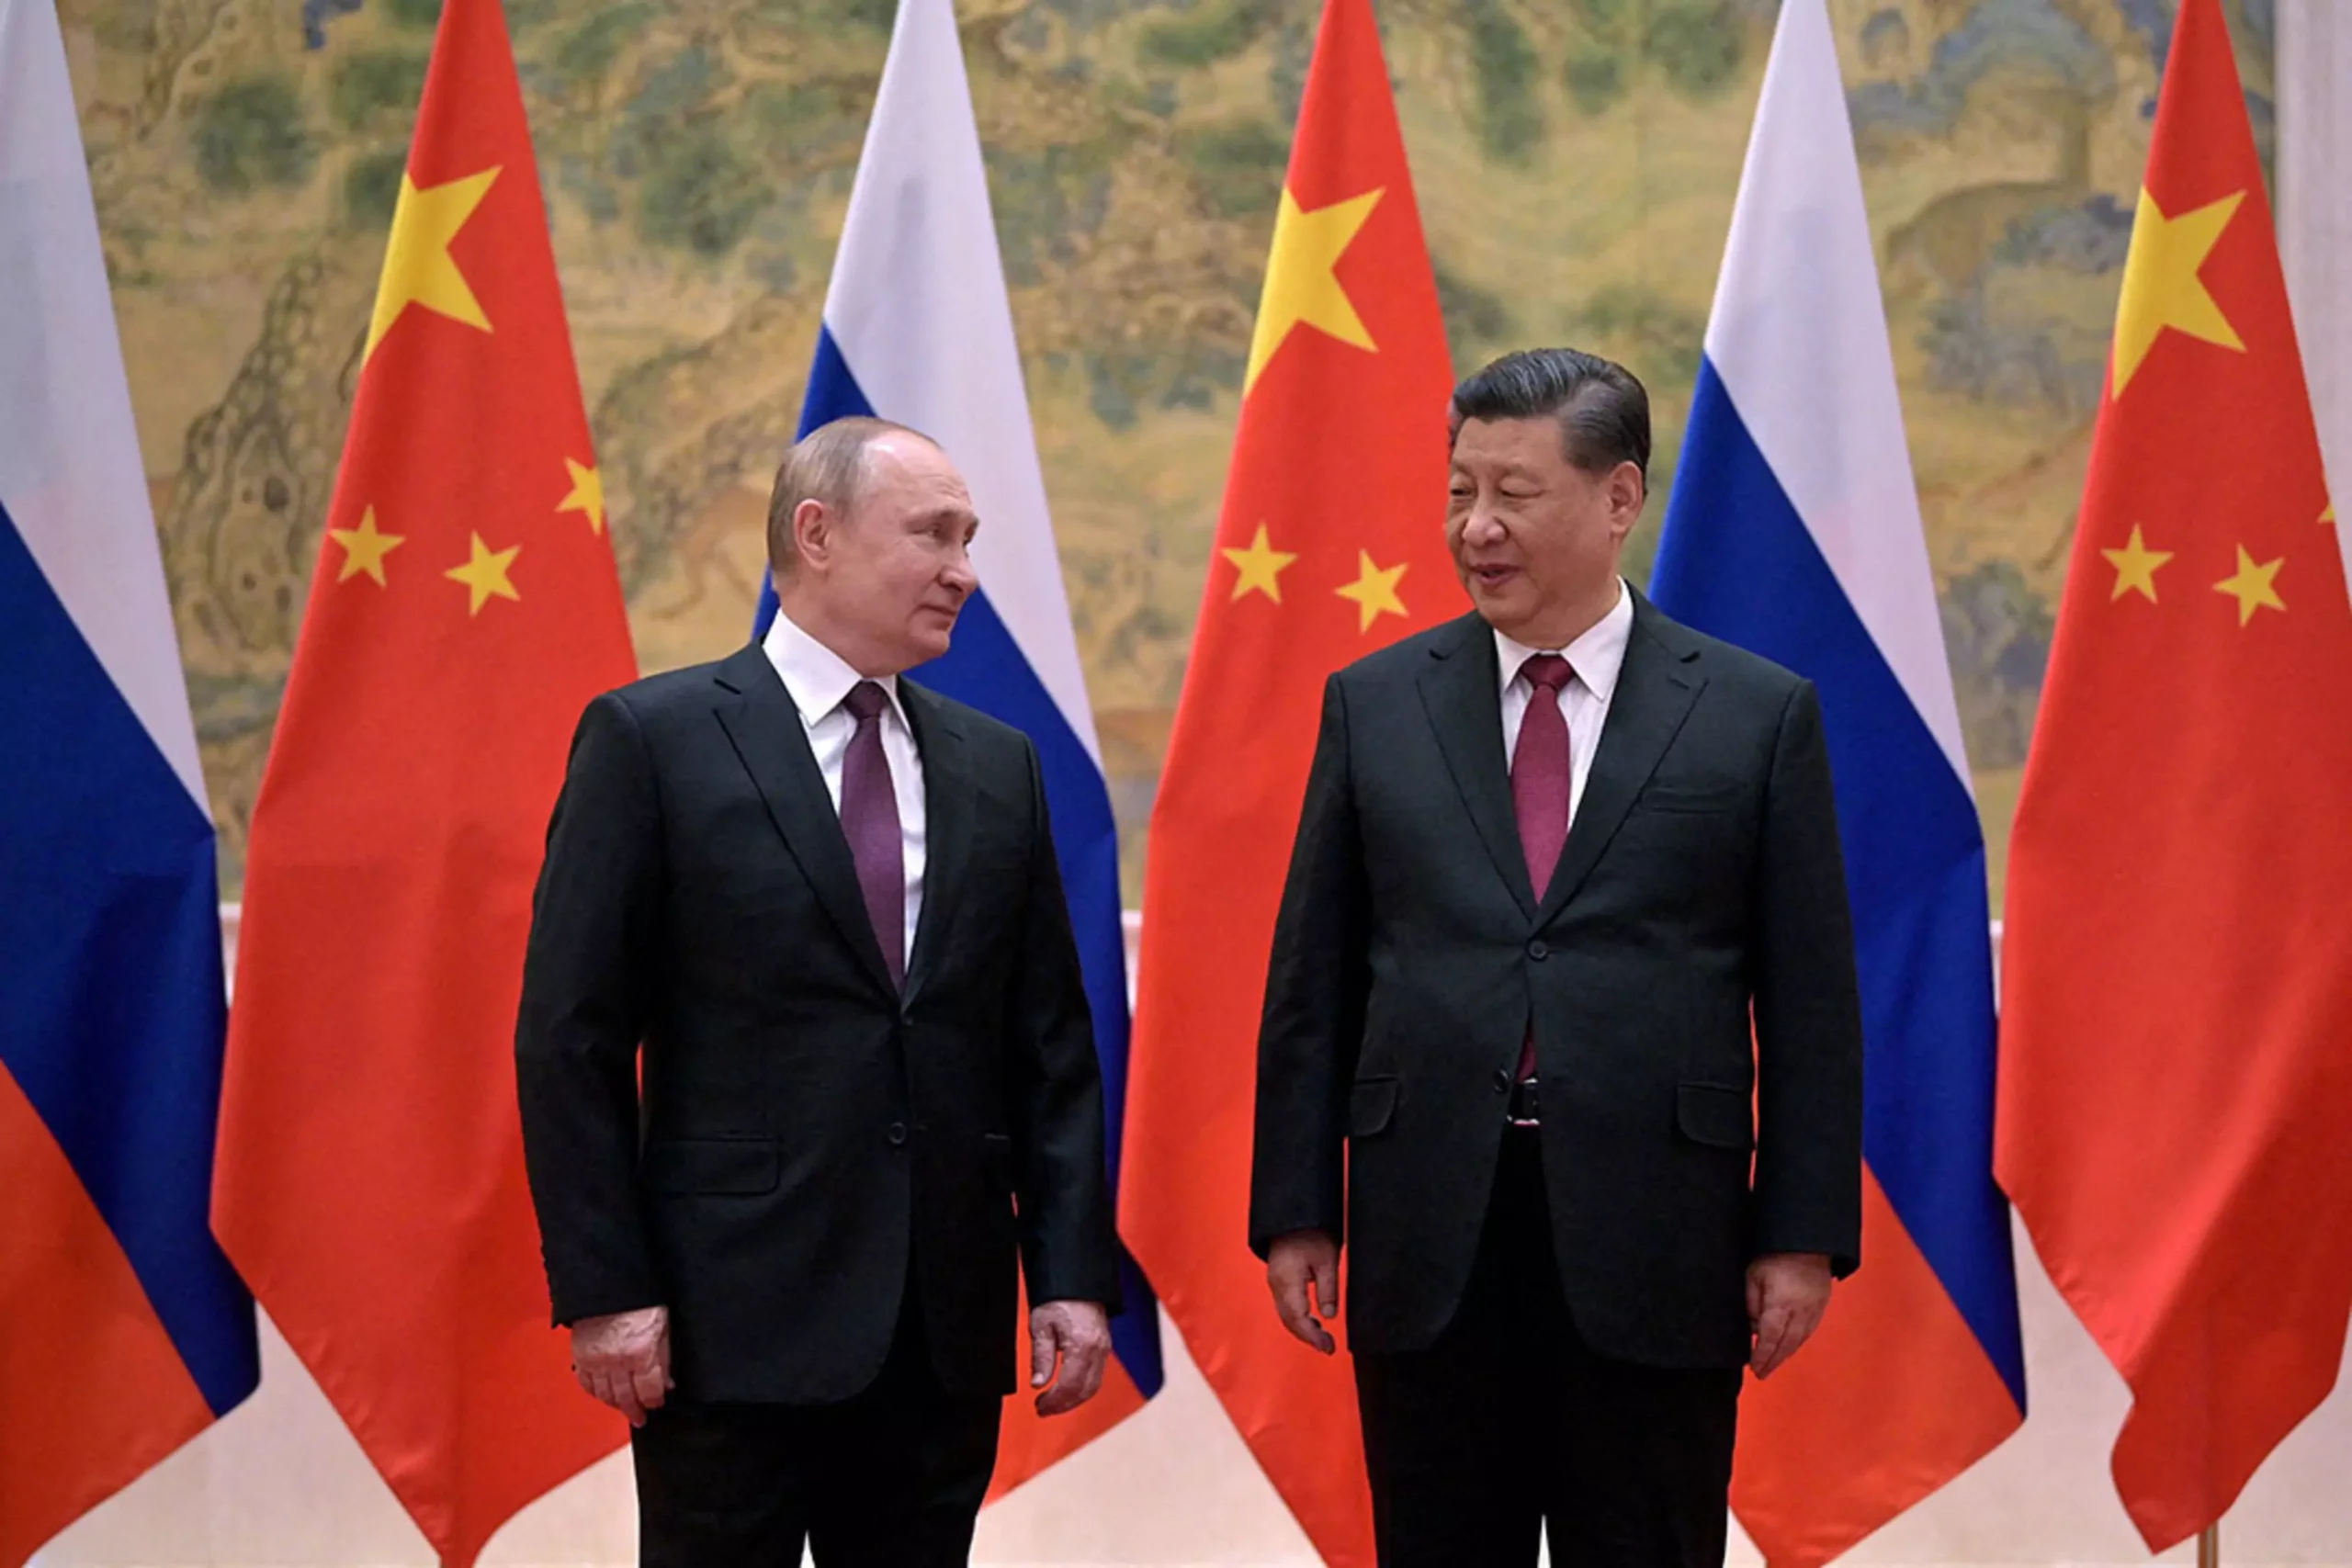 المخابرات الأمريكية تطلق تحذيرات بشأن العلاقات الروسية الصينية